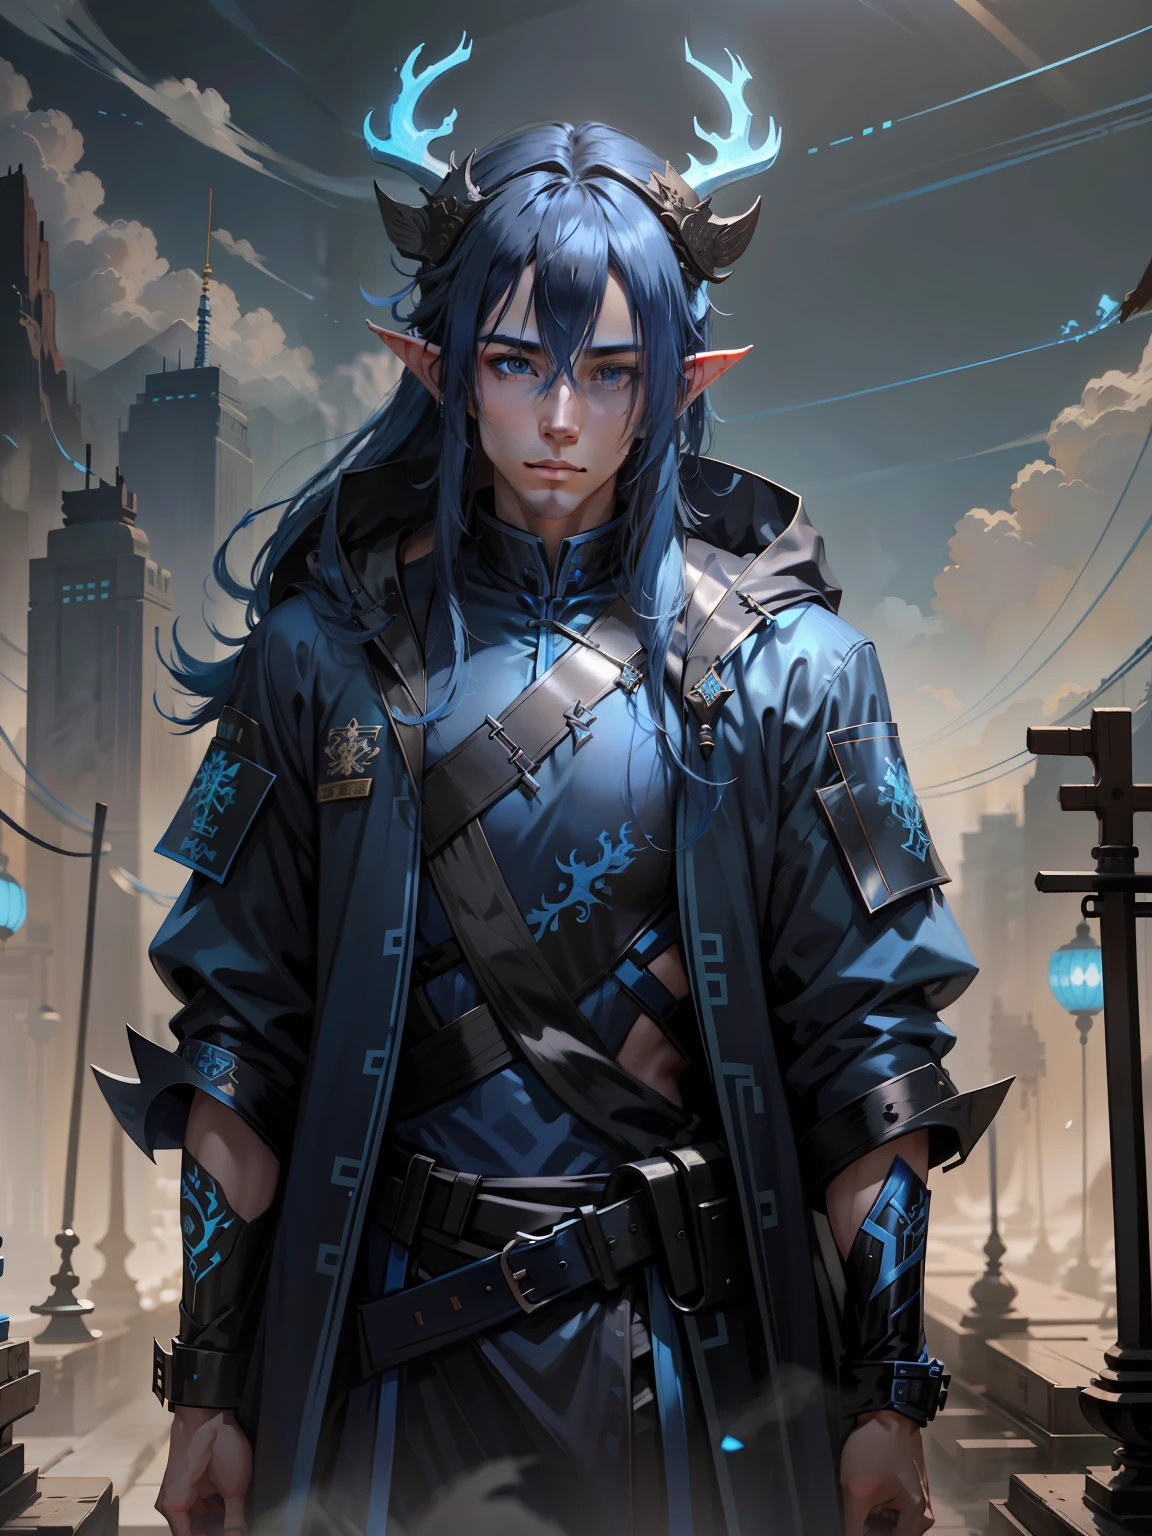 pelo largo azul, male, cuernos de ciervo de china en la cabeza, ropa tecnica azul, de pie, elfo de pelo azul, china dragon